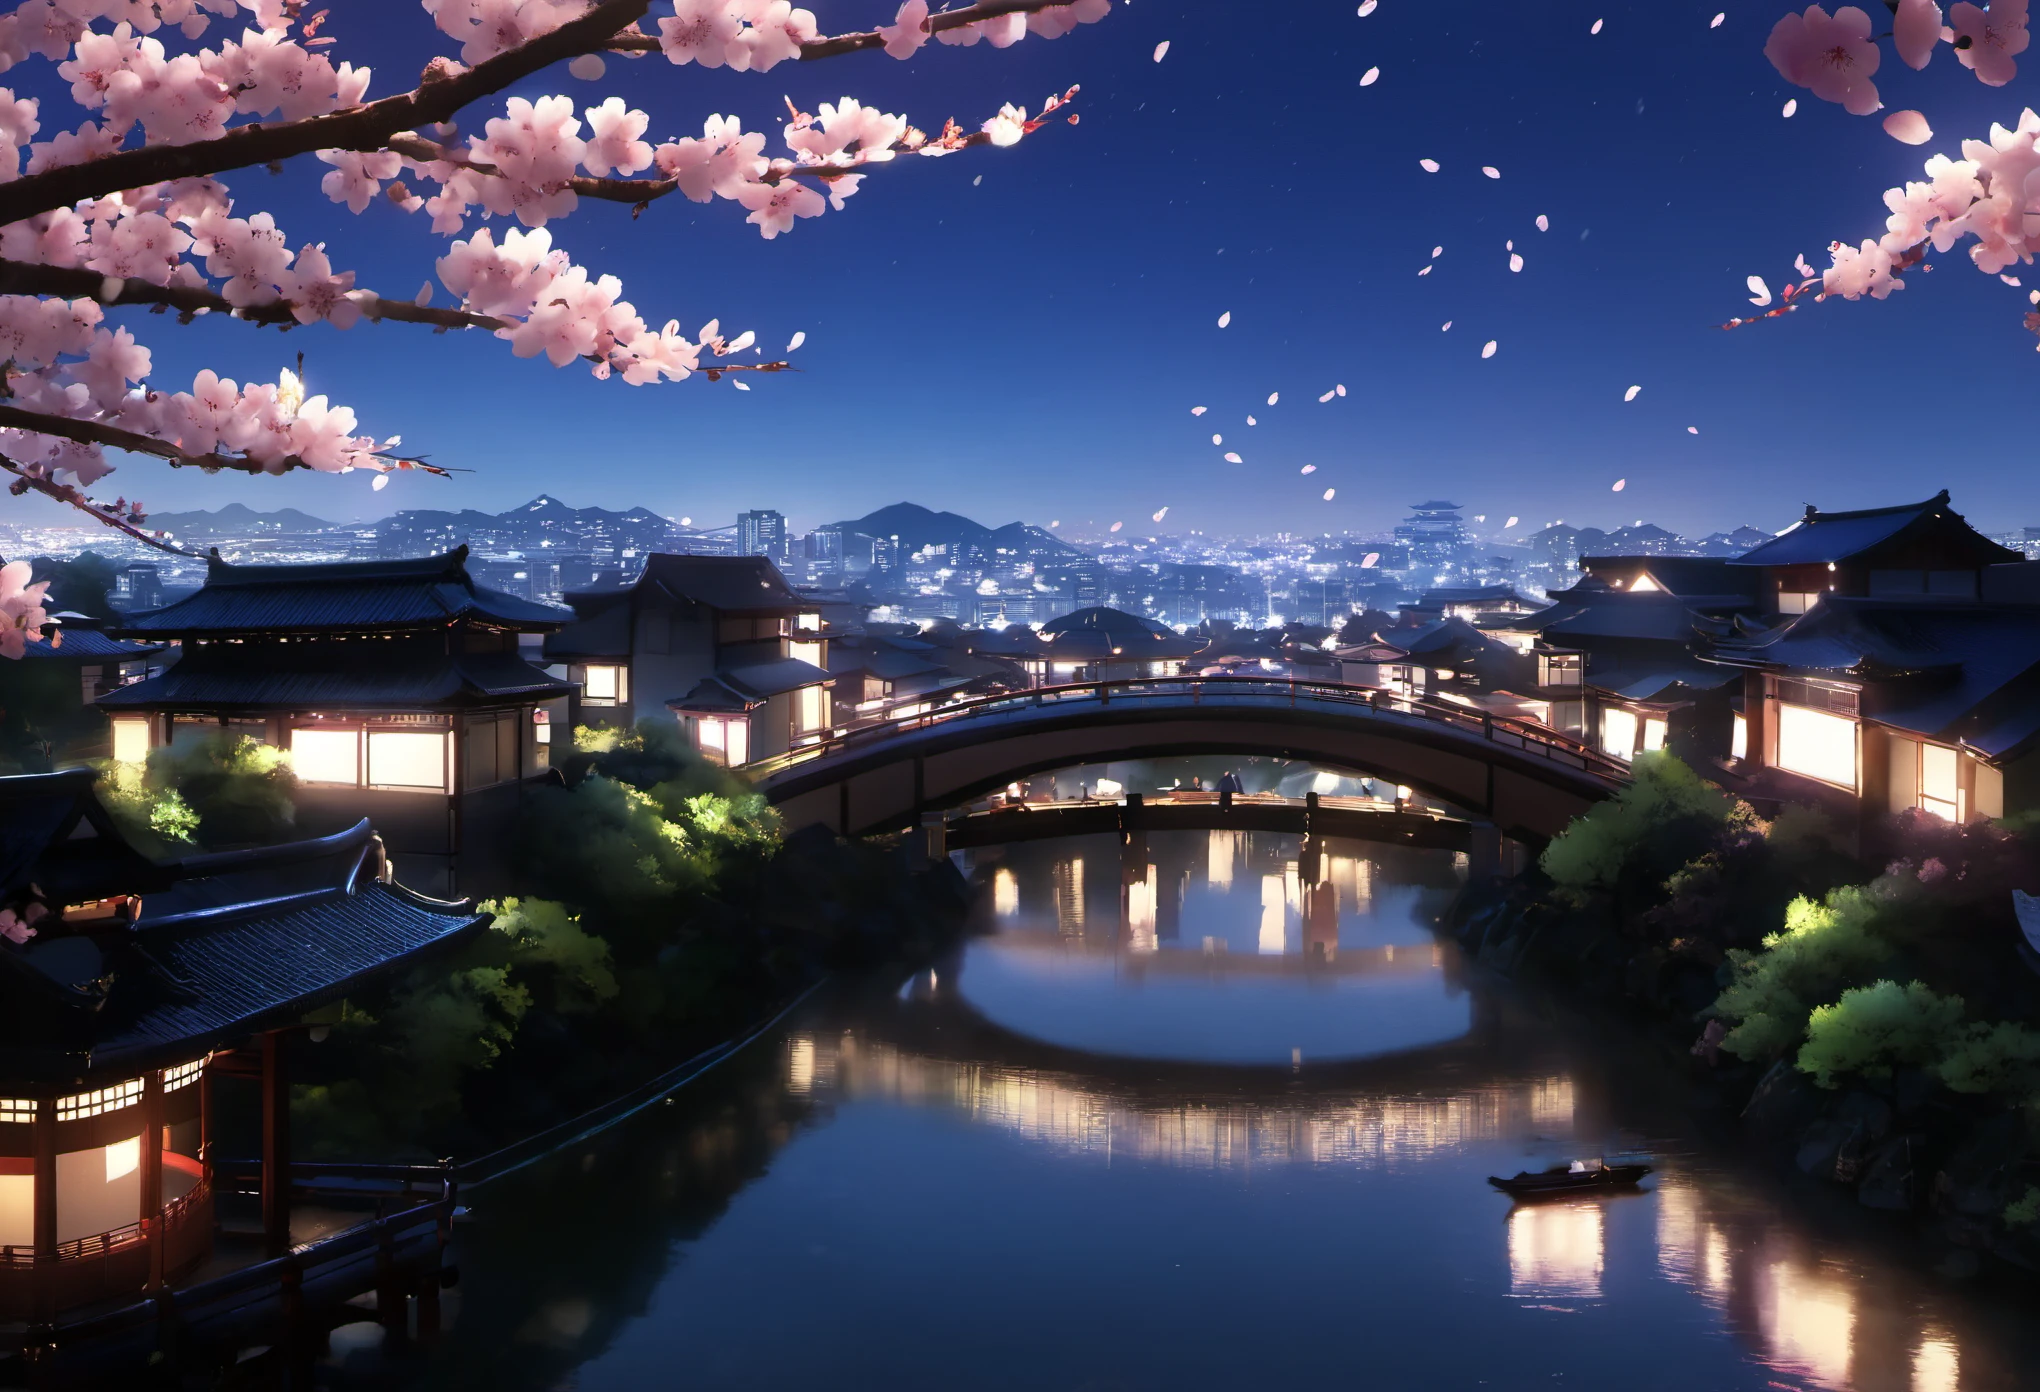 アリエンビュー, 周囲に桜が咲き誇る美しい夜景でした. 人間は見えなかった, 夜は晴れていて. 景色は日本の建築物でした, 橋や建物が水に囲まれている. 桜の花びらが木から出てきた, 景色の自然の美しさをさらに引き立てる. 遠方に, 